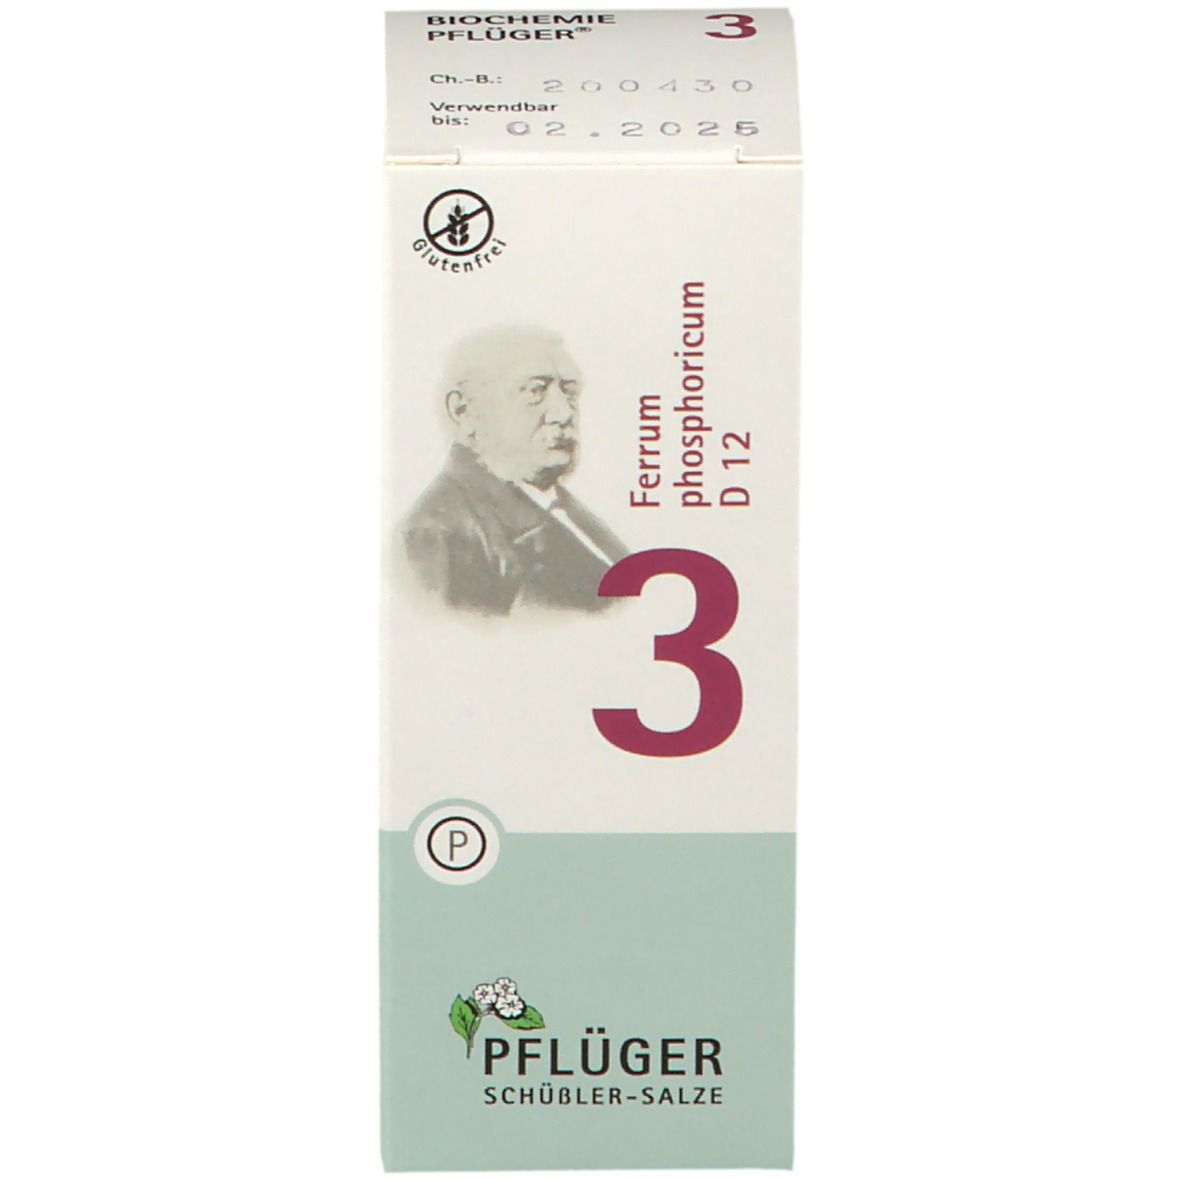 Biochemie Pflüger® Nr. 3 Ferrum phosphoricum D12 Tabletten